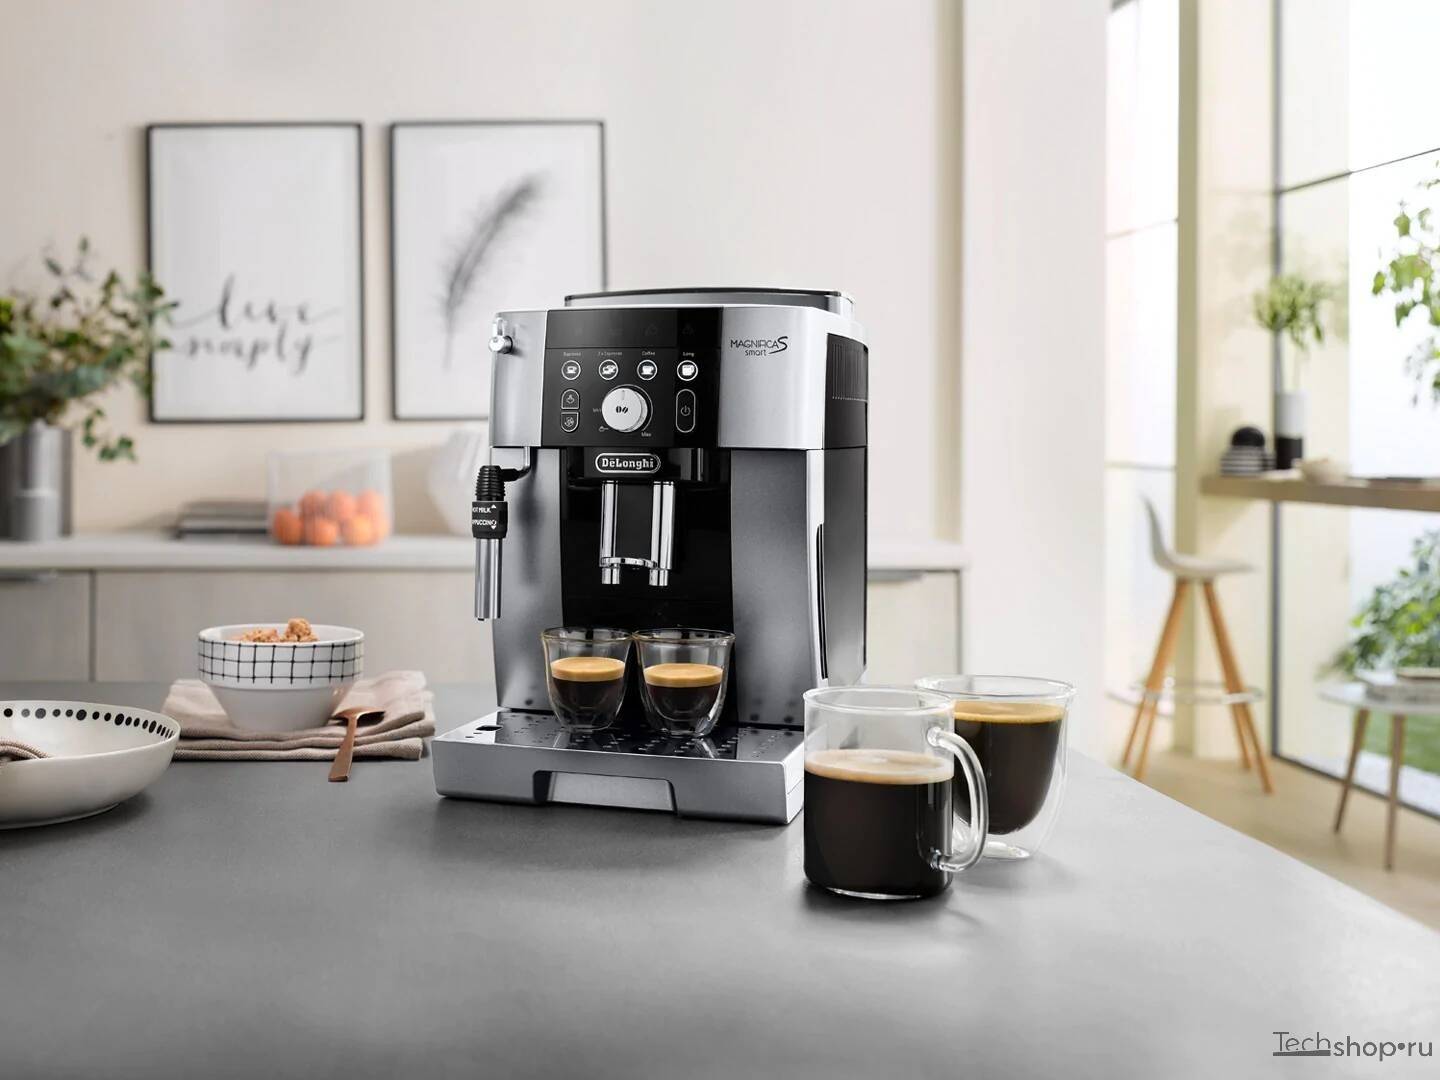 Лучшие рожковые кофеварки для дома рейтинг 2019-2020: топ 10 и их особенности, плюсы и минусы